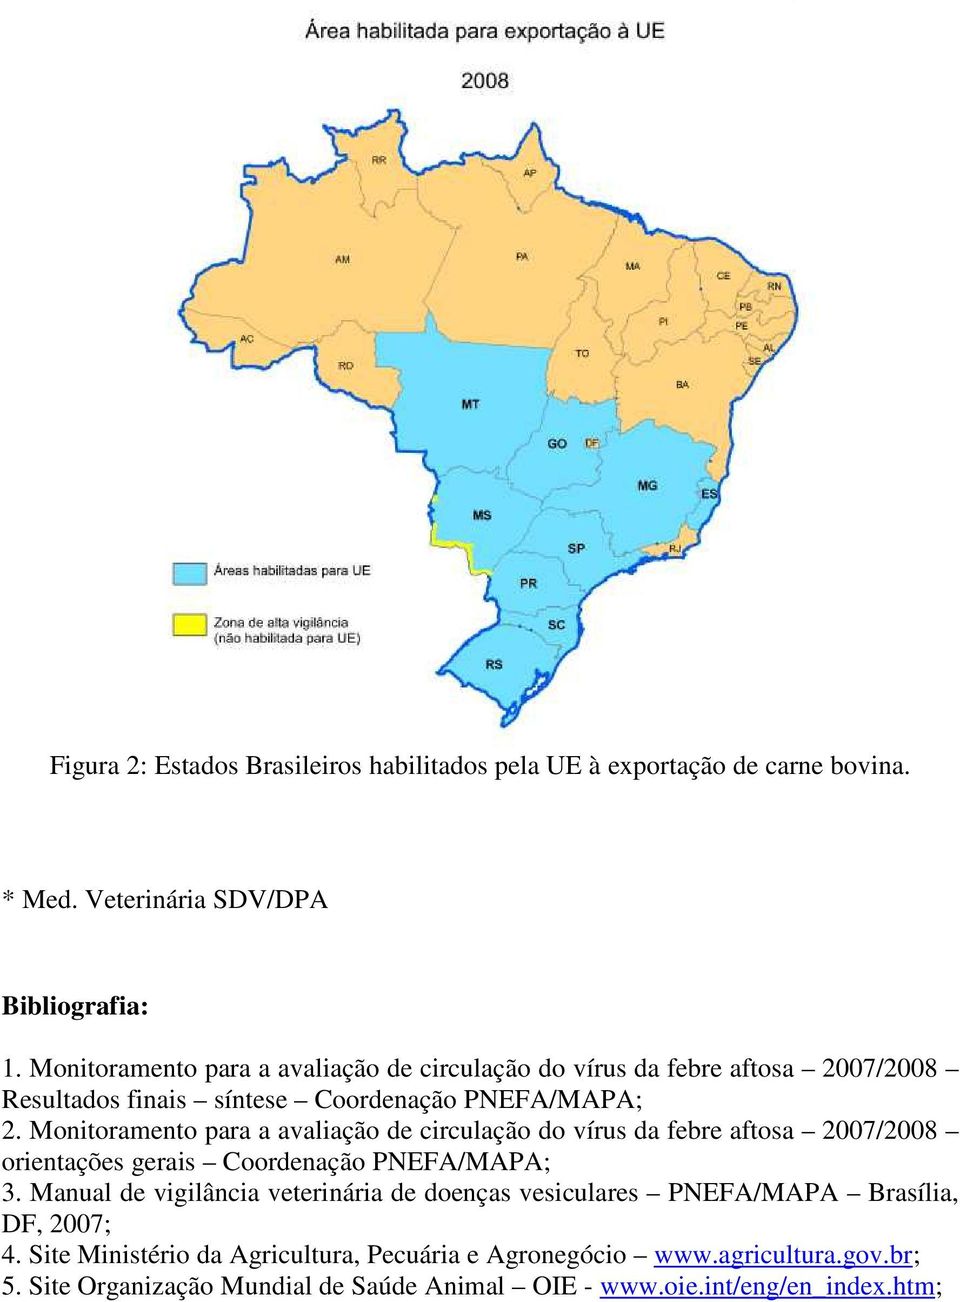 Monitoramento para a avaliação de circulação do vírus da febre aftosa 2007/2008 orientações gerais Coordenação PNEFA/MAPA; 3.